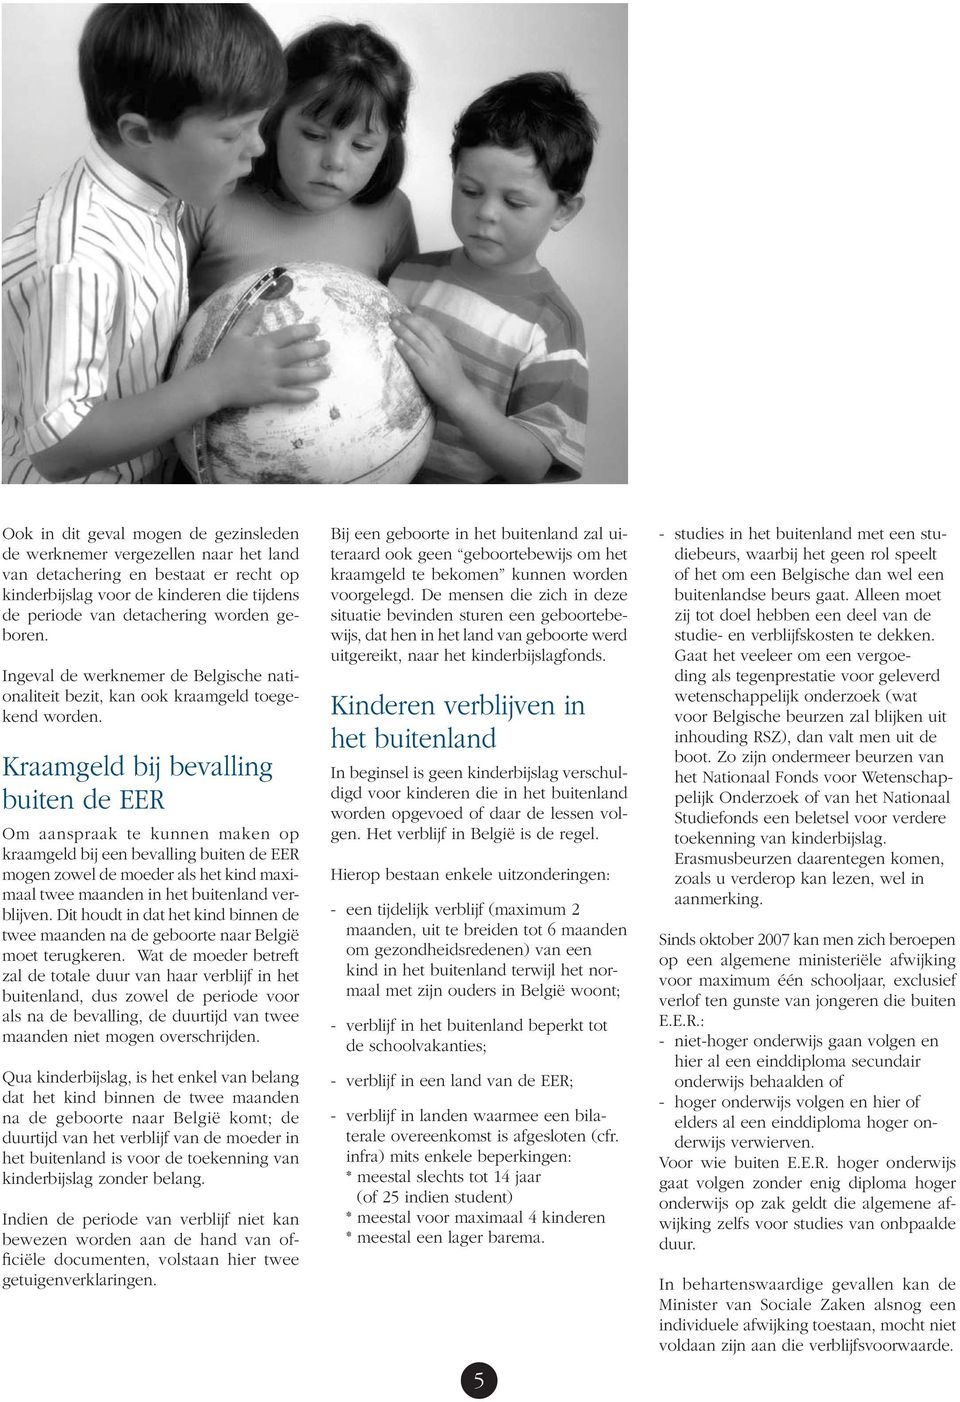 Kraamgeld bij bevalling buiten de EER Om aanspraak te kunnen maken op kraamgeld bij een bevalling buiten de EER mogen zowel de moeder als het kind maximaal twee maanden in het buitenland verblijven.